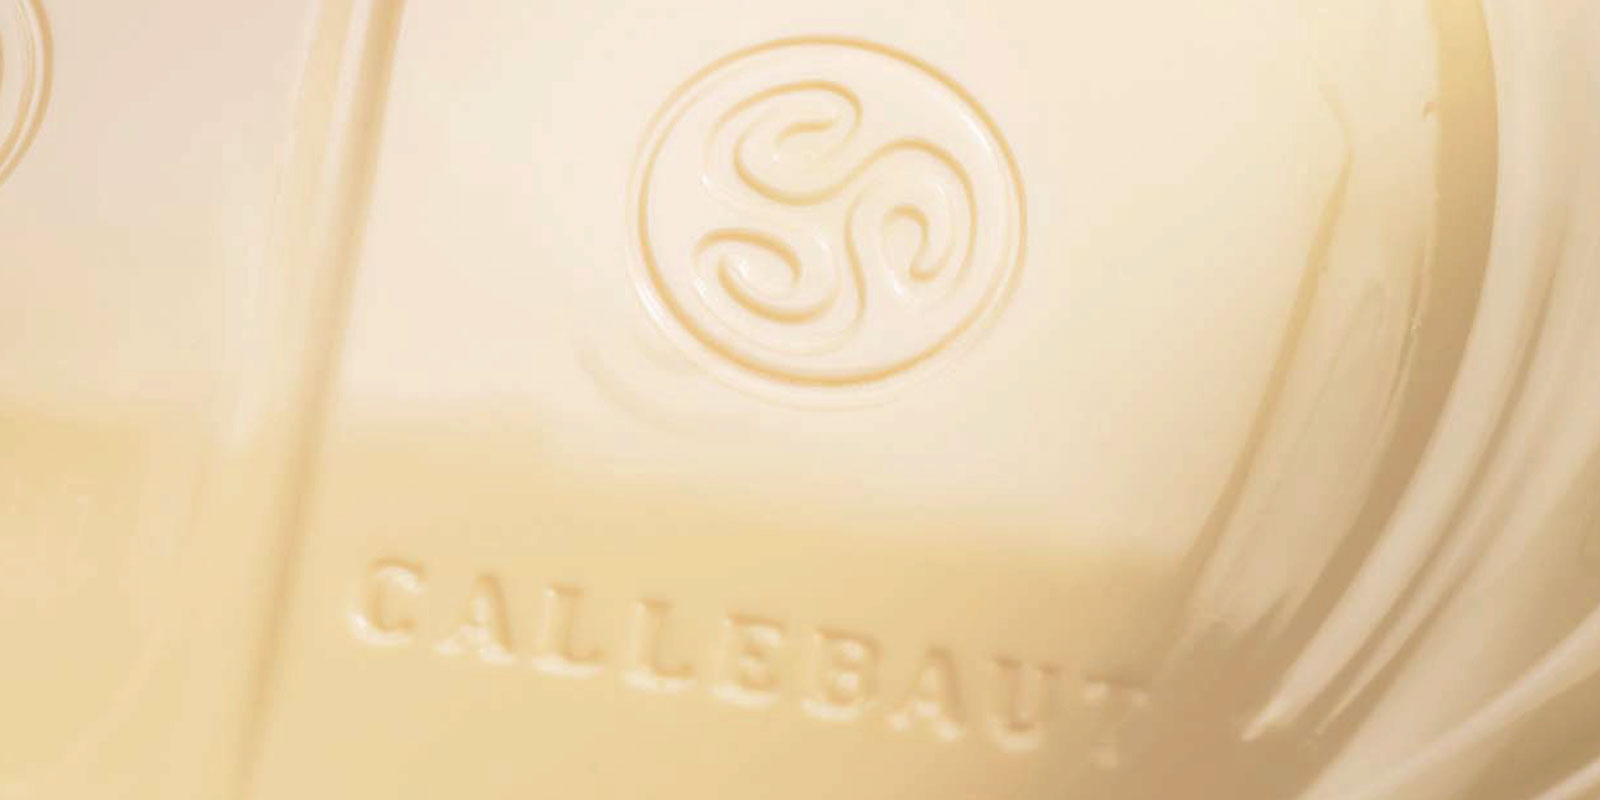 Hvit sjokolade fra Callebaut Hvit sjokolade er resultatet av a blande kakaosmoer, melkepulver og sukker. Blandingsforholdet mellom disse ingrediensene - for eksempel vanillin, vanilje eller lecitin - bestemmer smaken pa sluttproduktet.